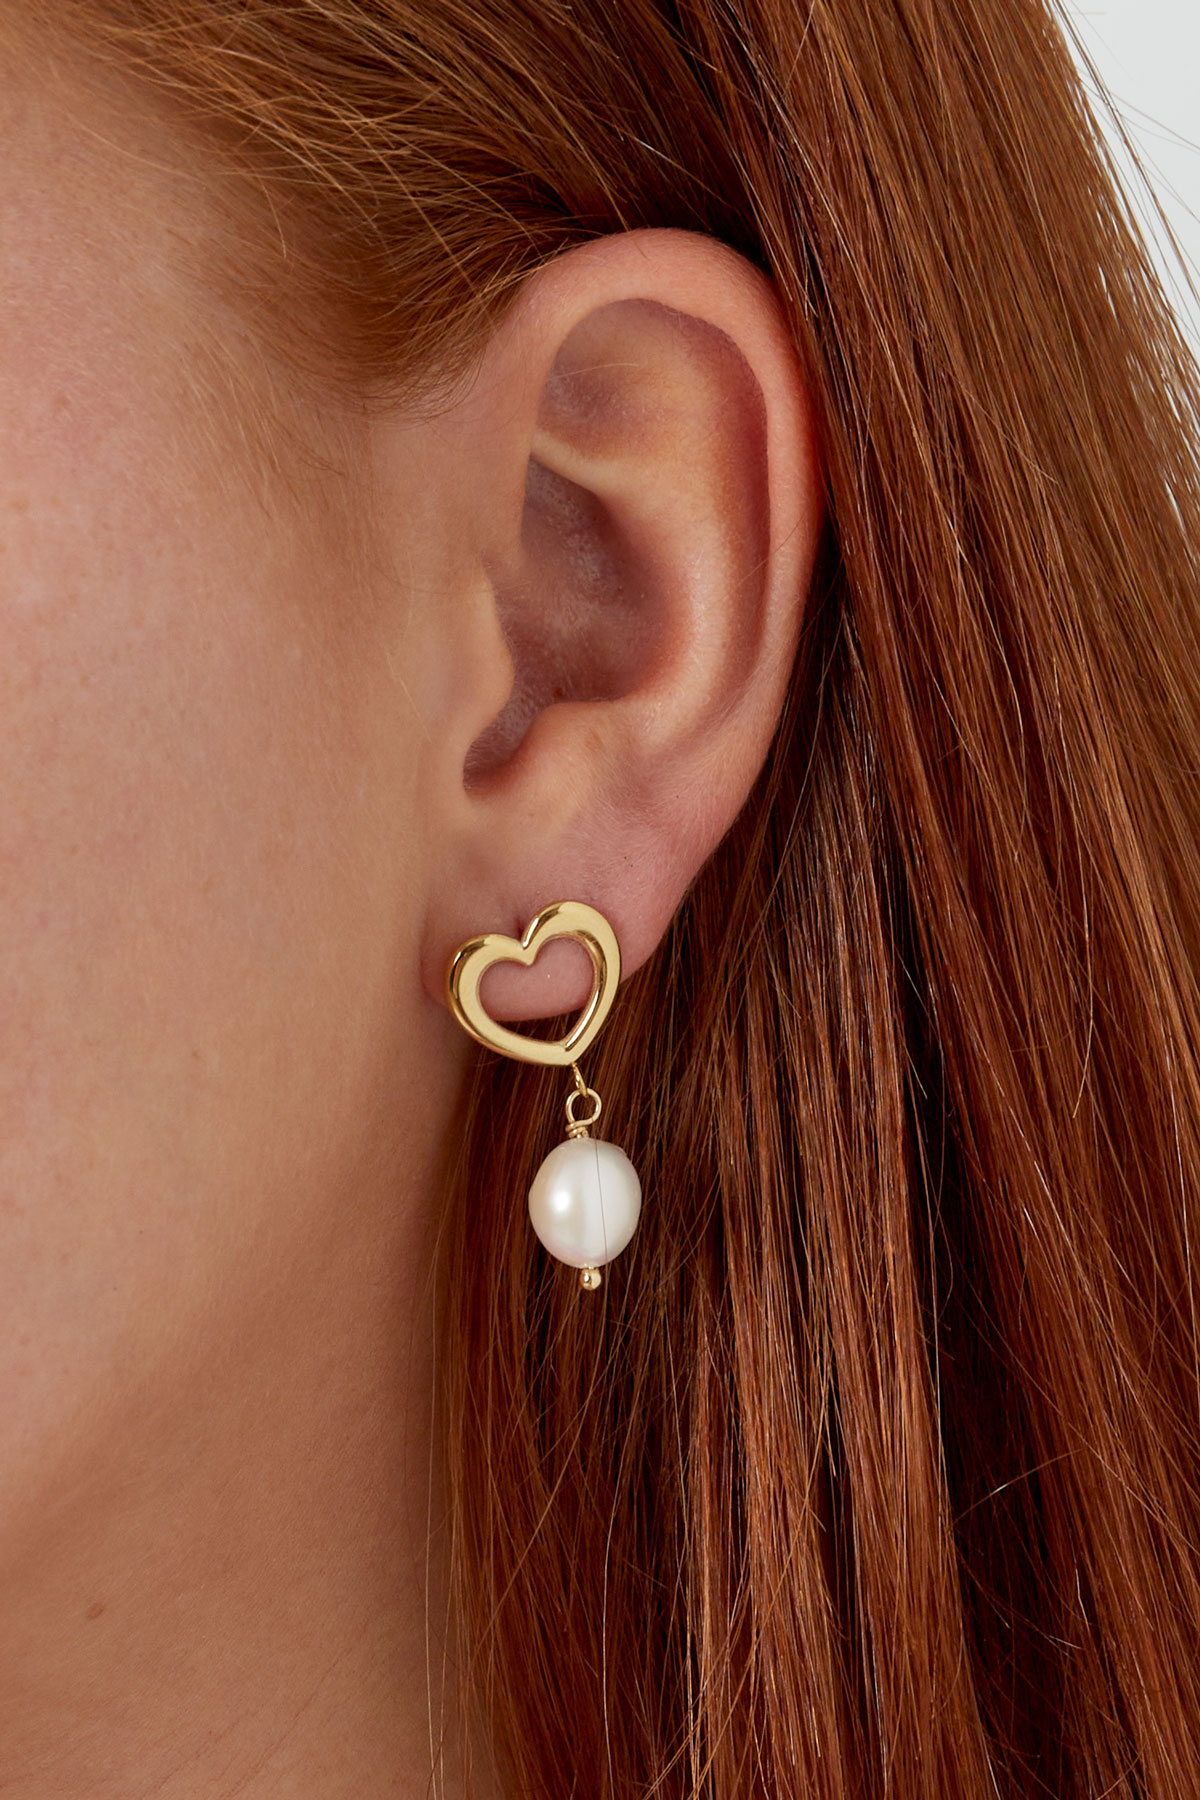 Ohrring Herz mit Perlendetail – silberner Edelstahl h5 Bild3